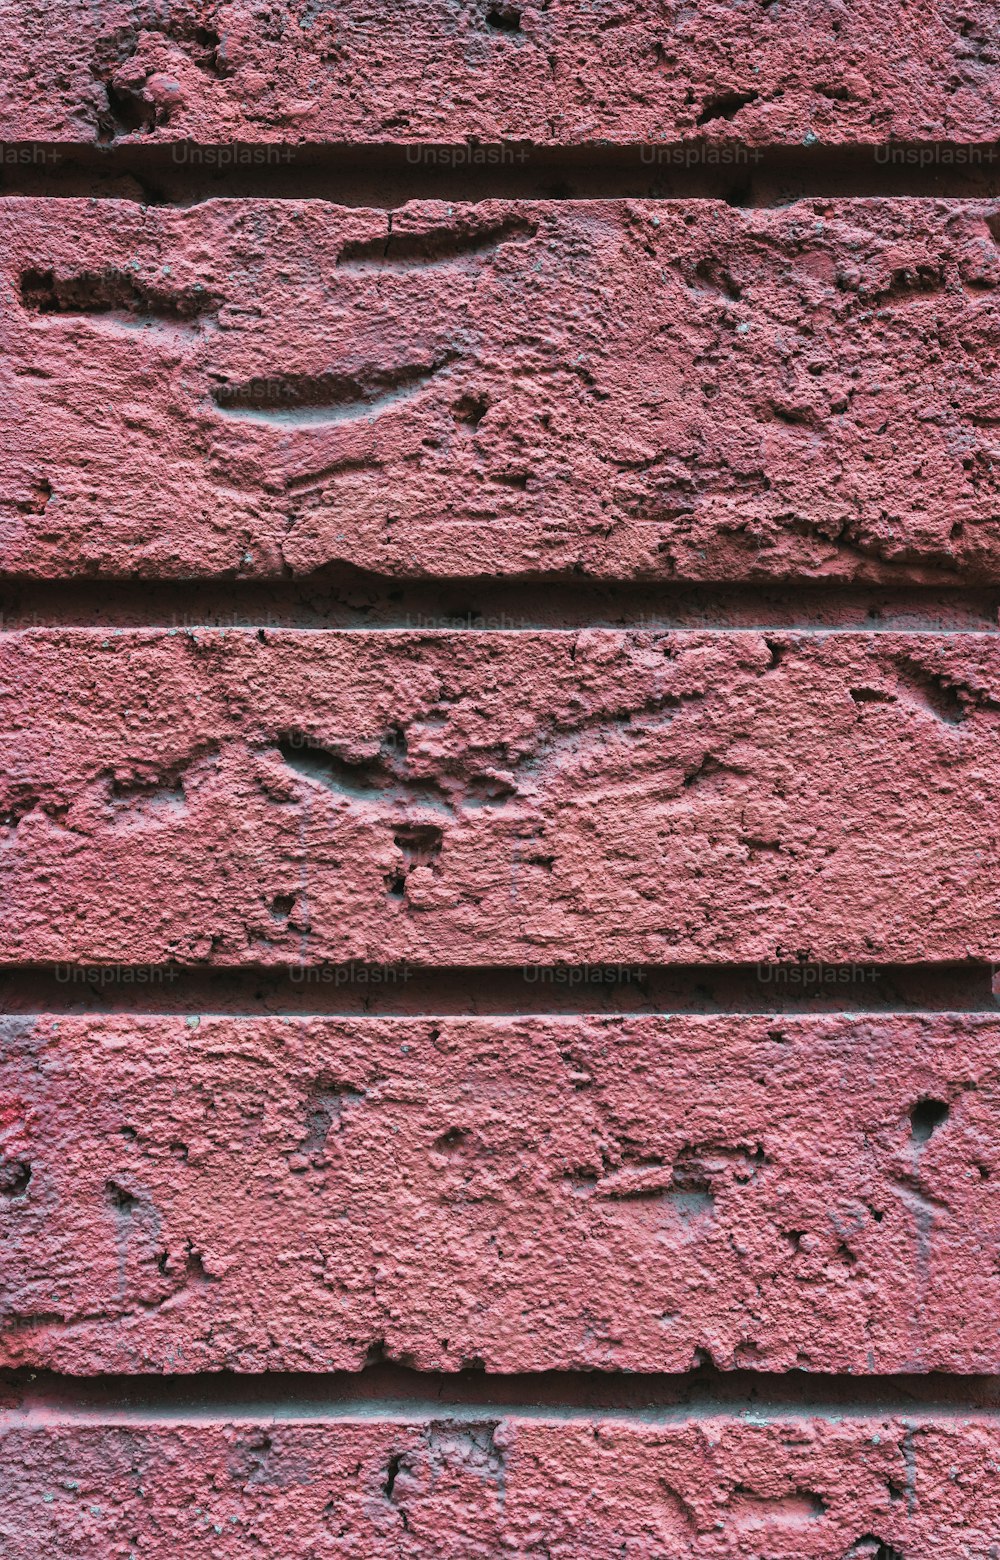 Gros plan d’un mur de briques rouges